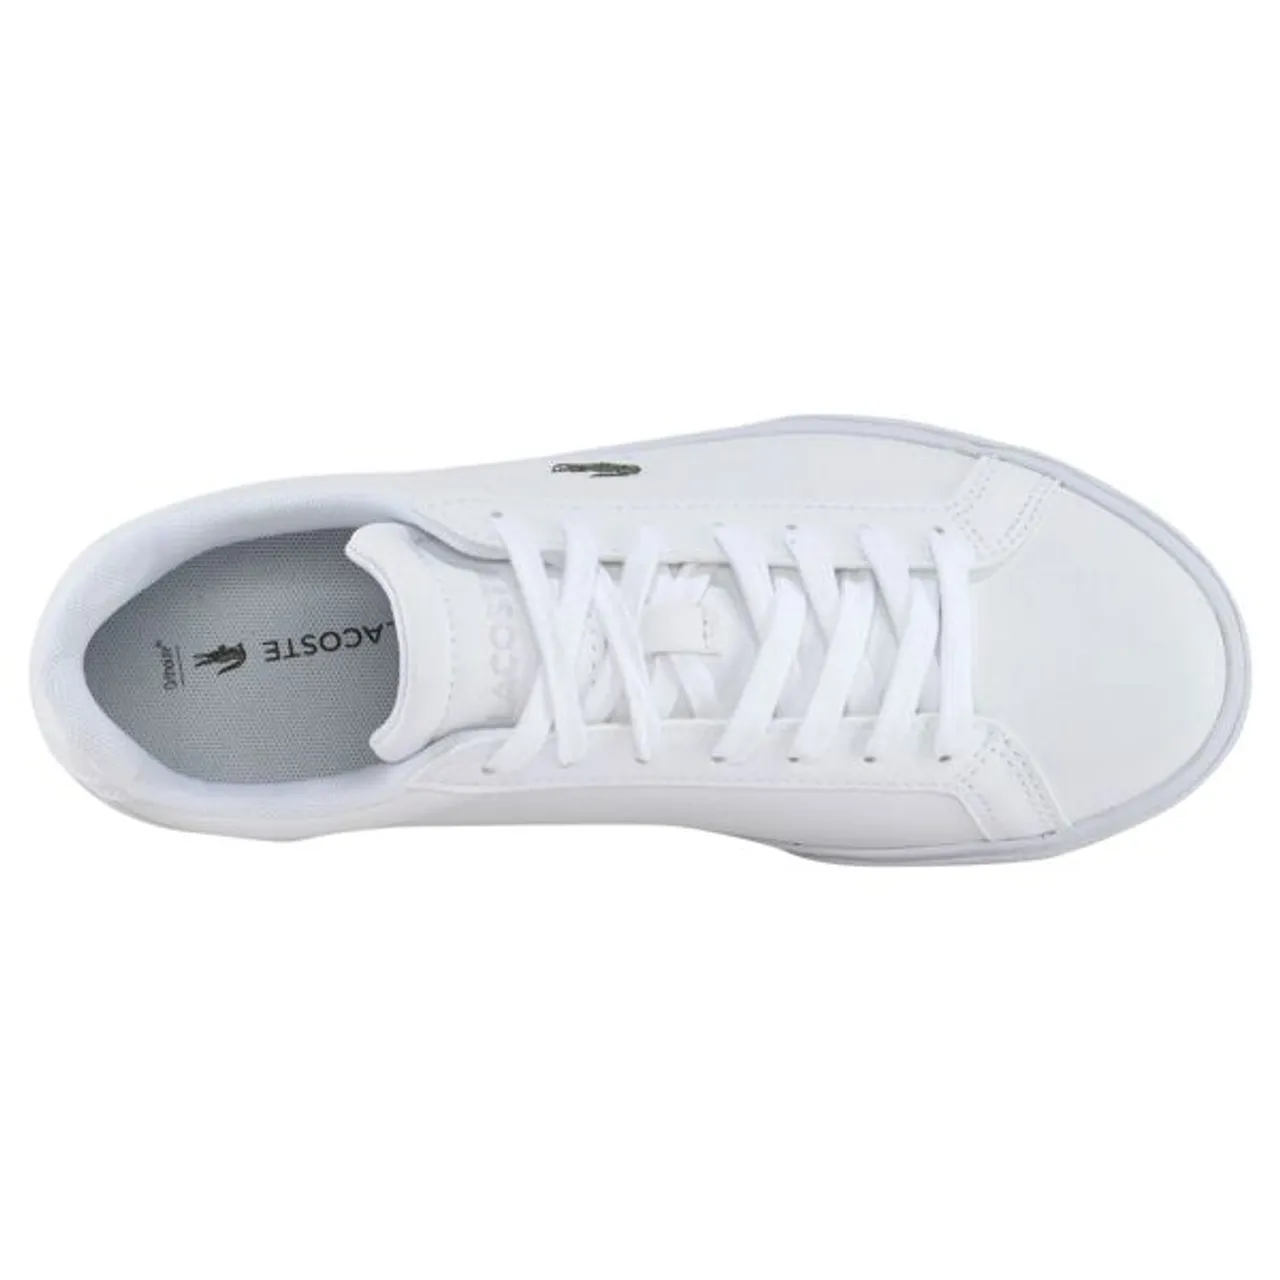 Sneaker LACOSTE "LEROND PRO BL 23 1 CFA" Gr. 39,5, weiß (weiß, weiß) Schuhe Sneaker